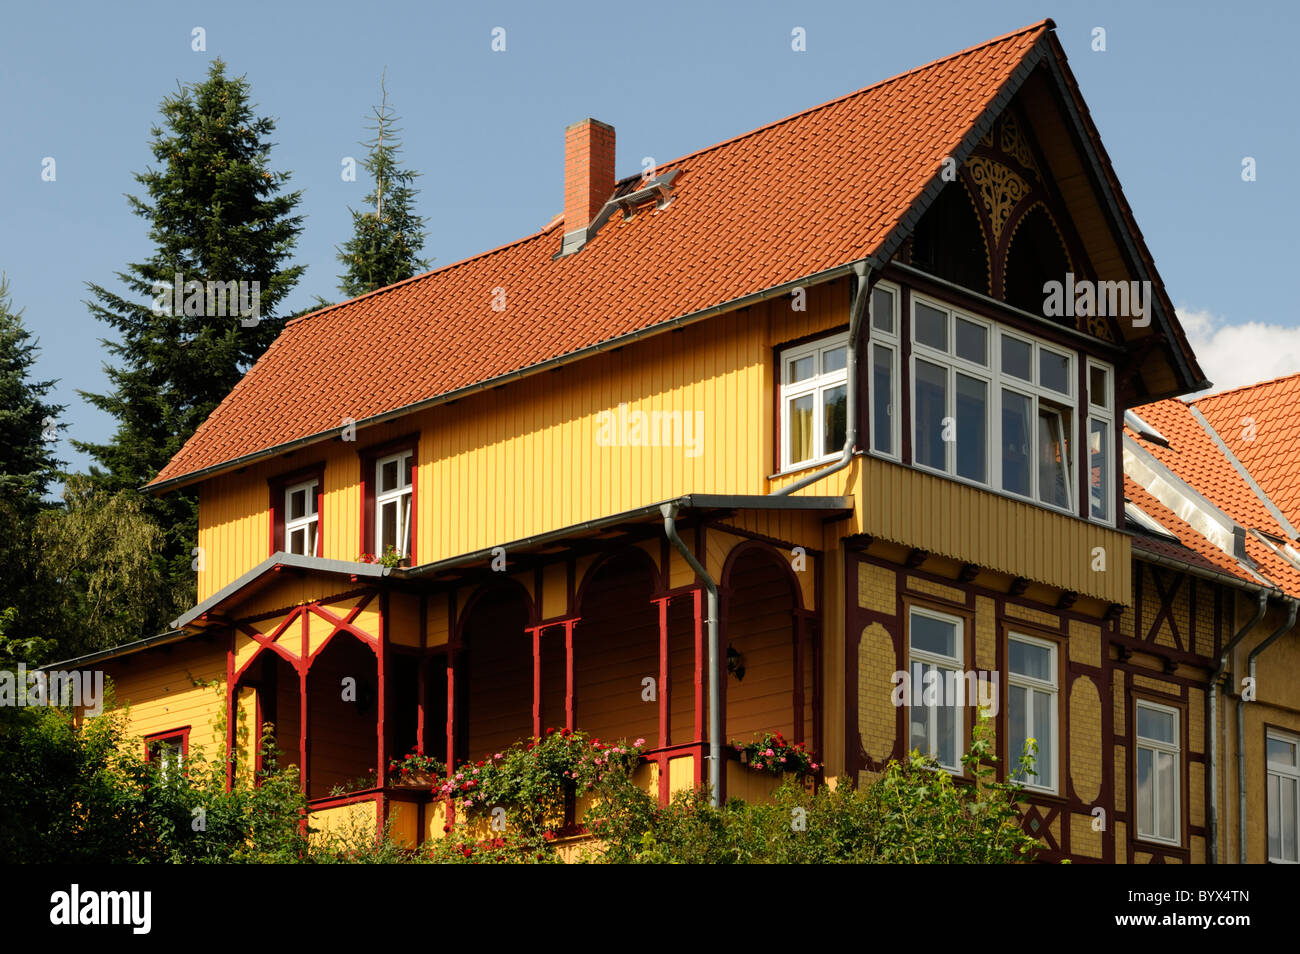 Mehrfamilienhaus in Wernigerode, Sachsen-Anhalt, Deutschland. - Multiple-family dwelling in Wernigerode, Saxony-Anhalt, Germany. Stock Photo